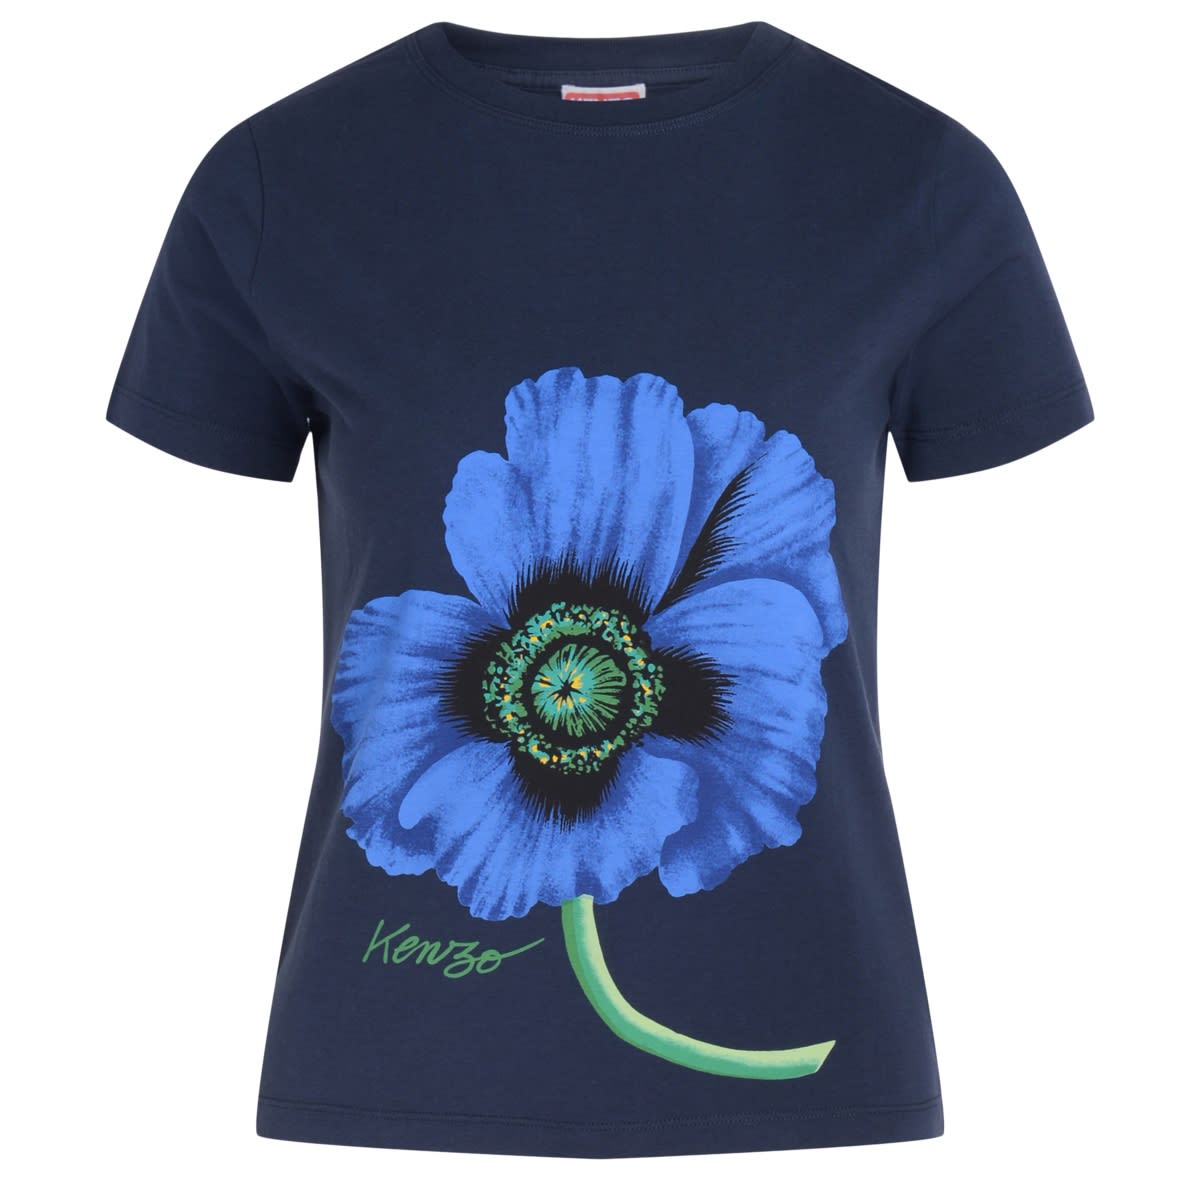 Kenzo Poppy Navy Blue T-shirt